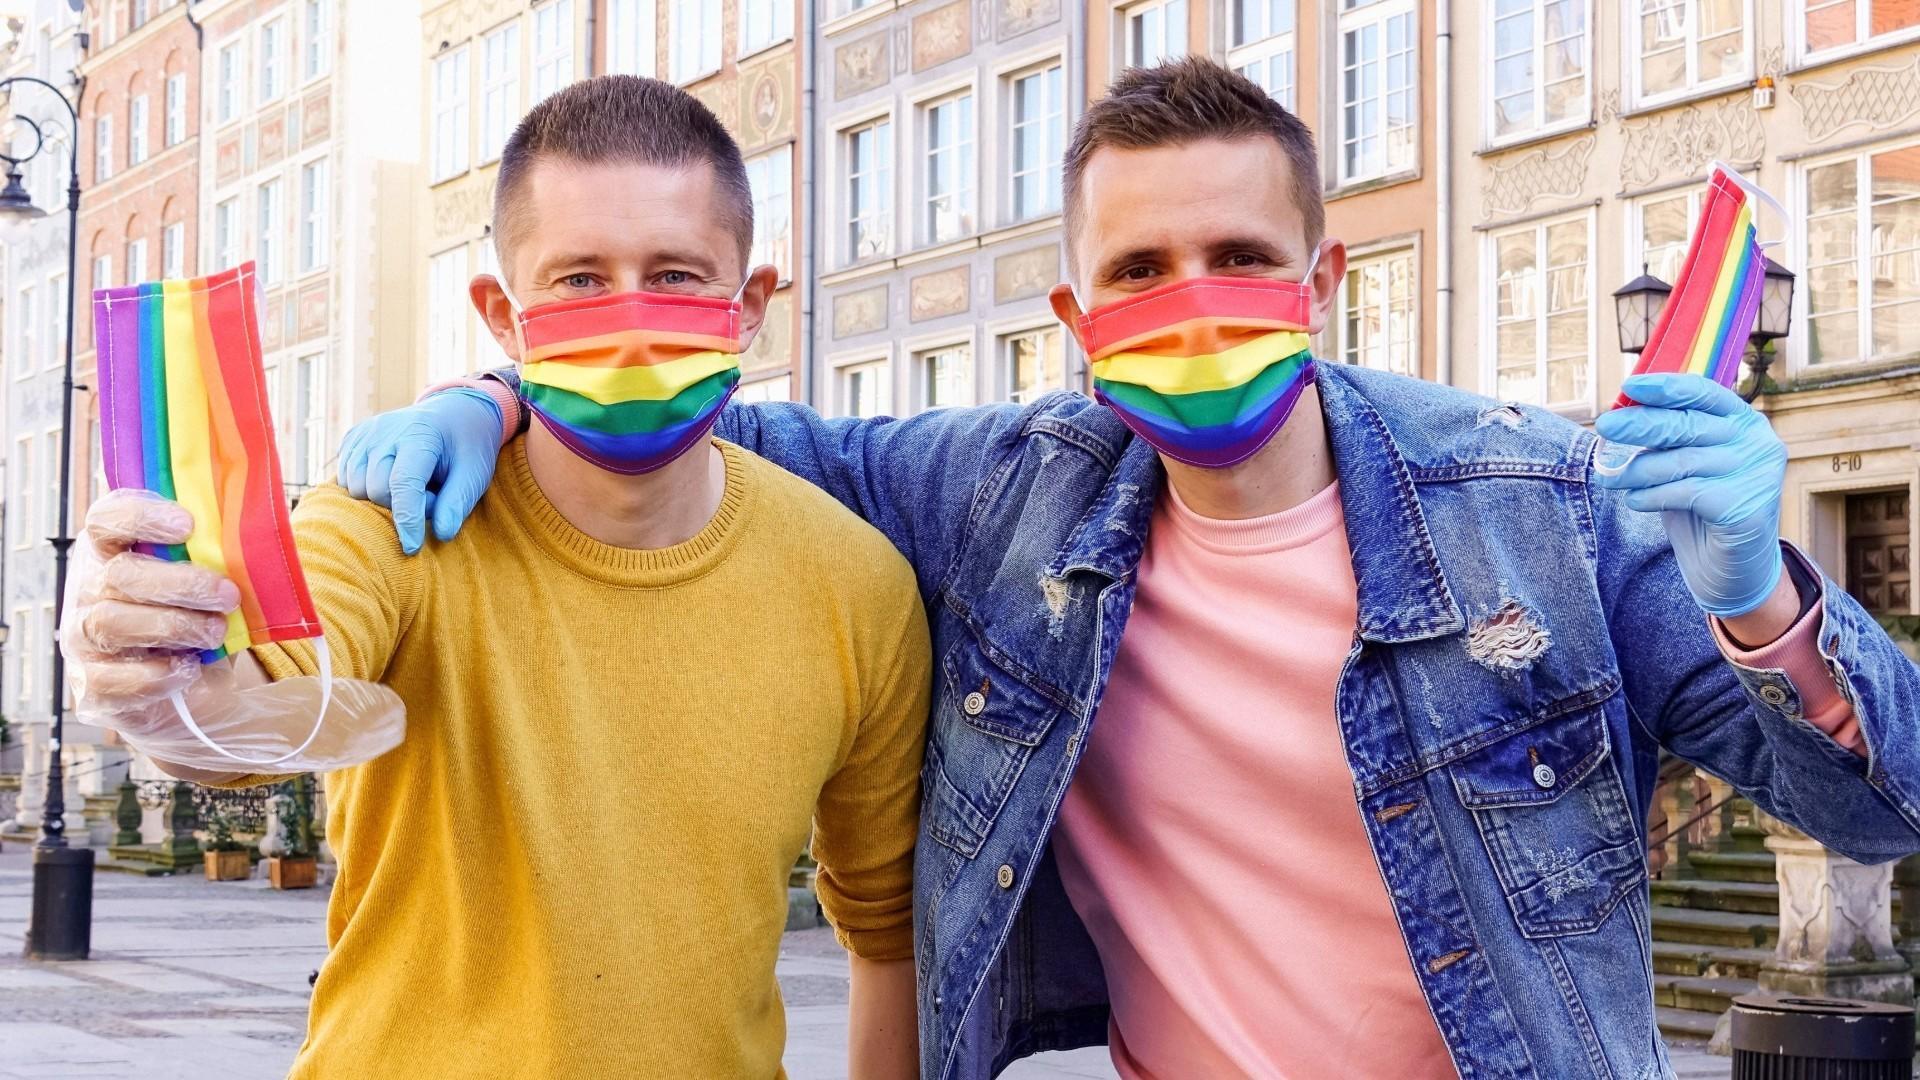 Polonia prohibirá que personas gay adopten a menores, aunque sean solteros